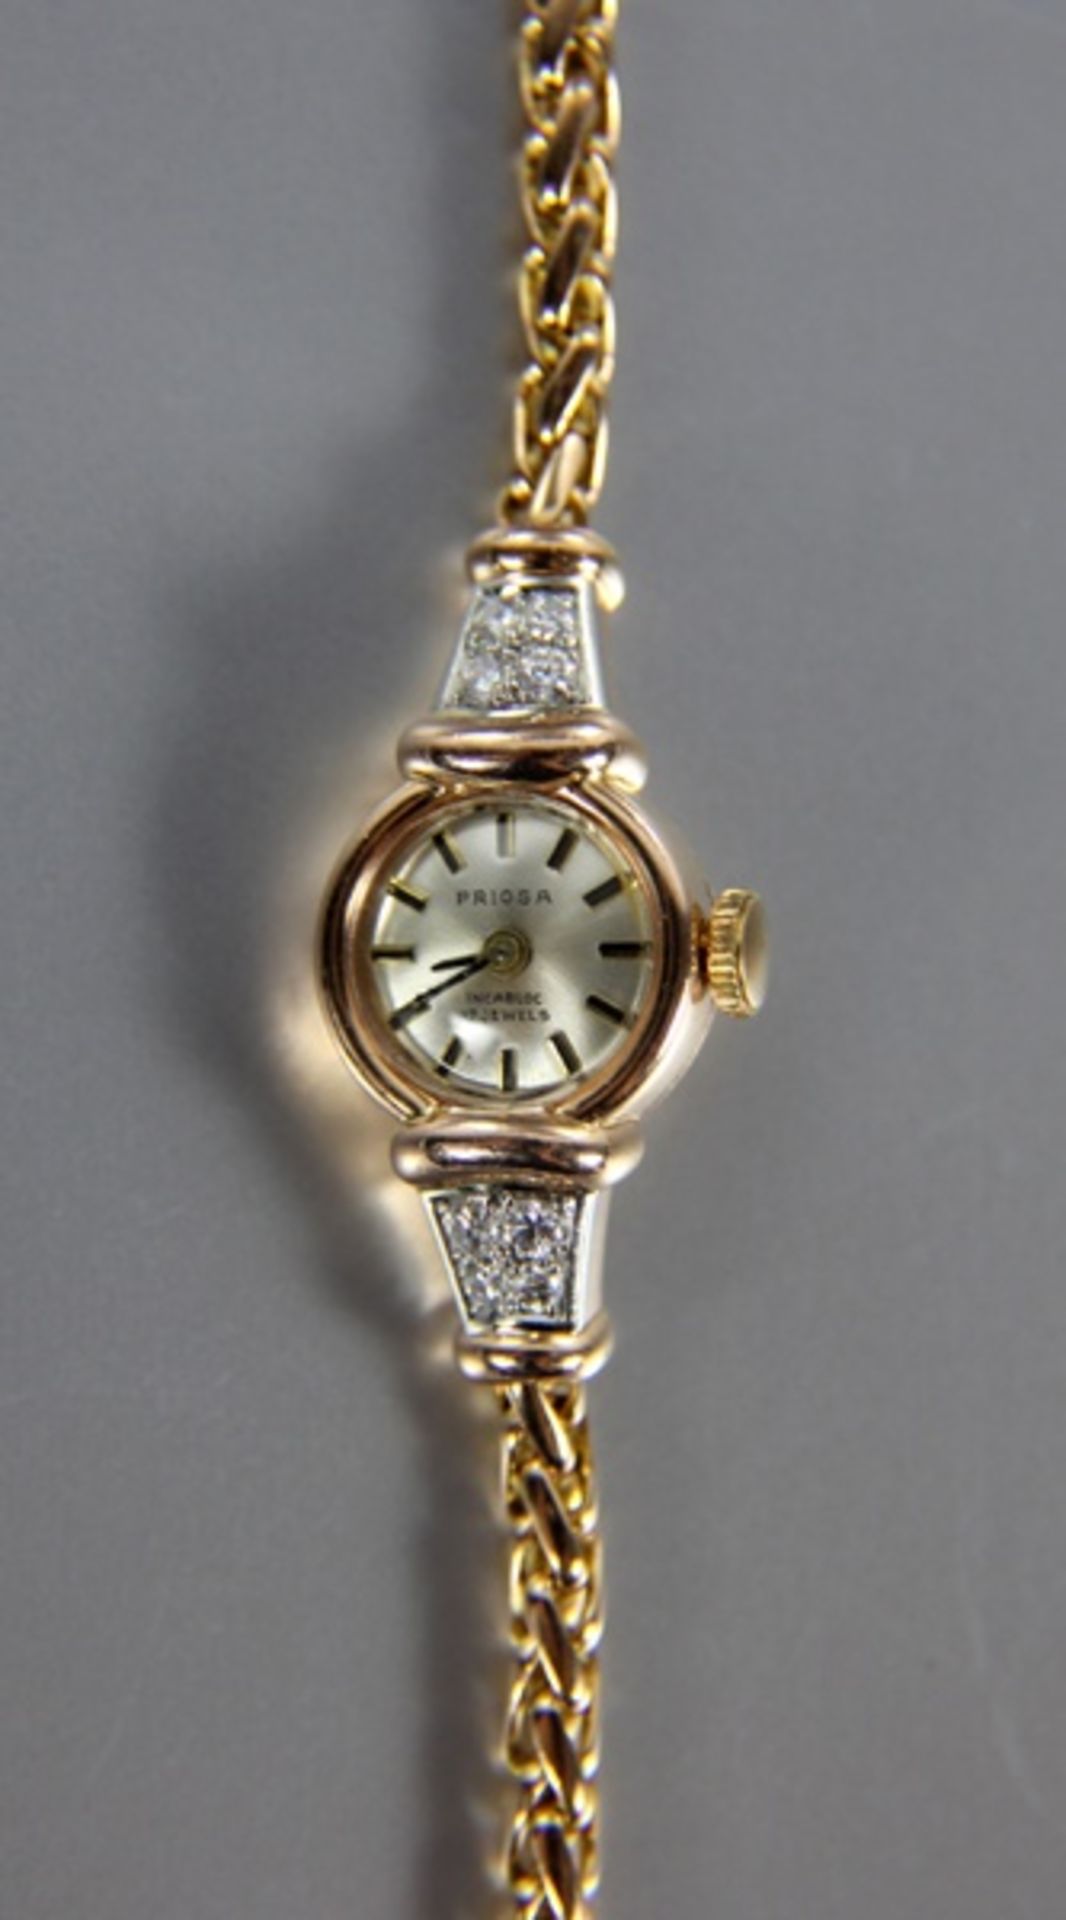 Damenarmbanduhr585er RG, Priosa-Damenarmbanduhr, mit 4 Diamanten in versch. Größen, rundes